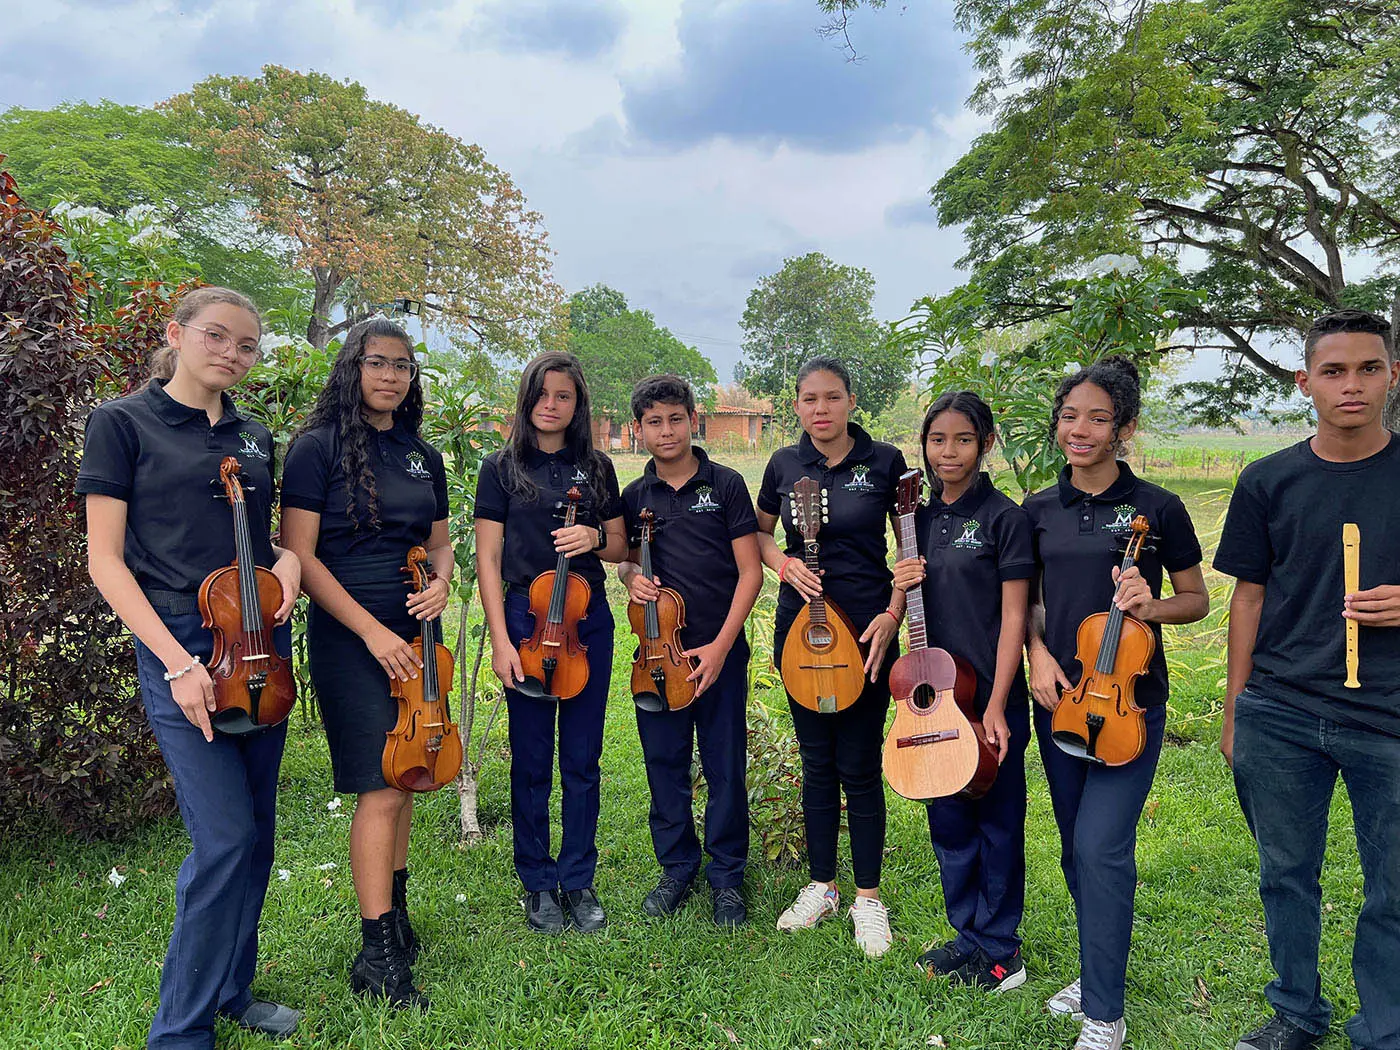 reunion de equipo de una escuela de violin - Qué se necesita en un salón de música